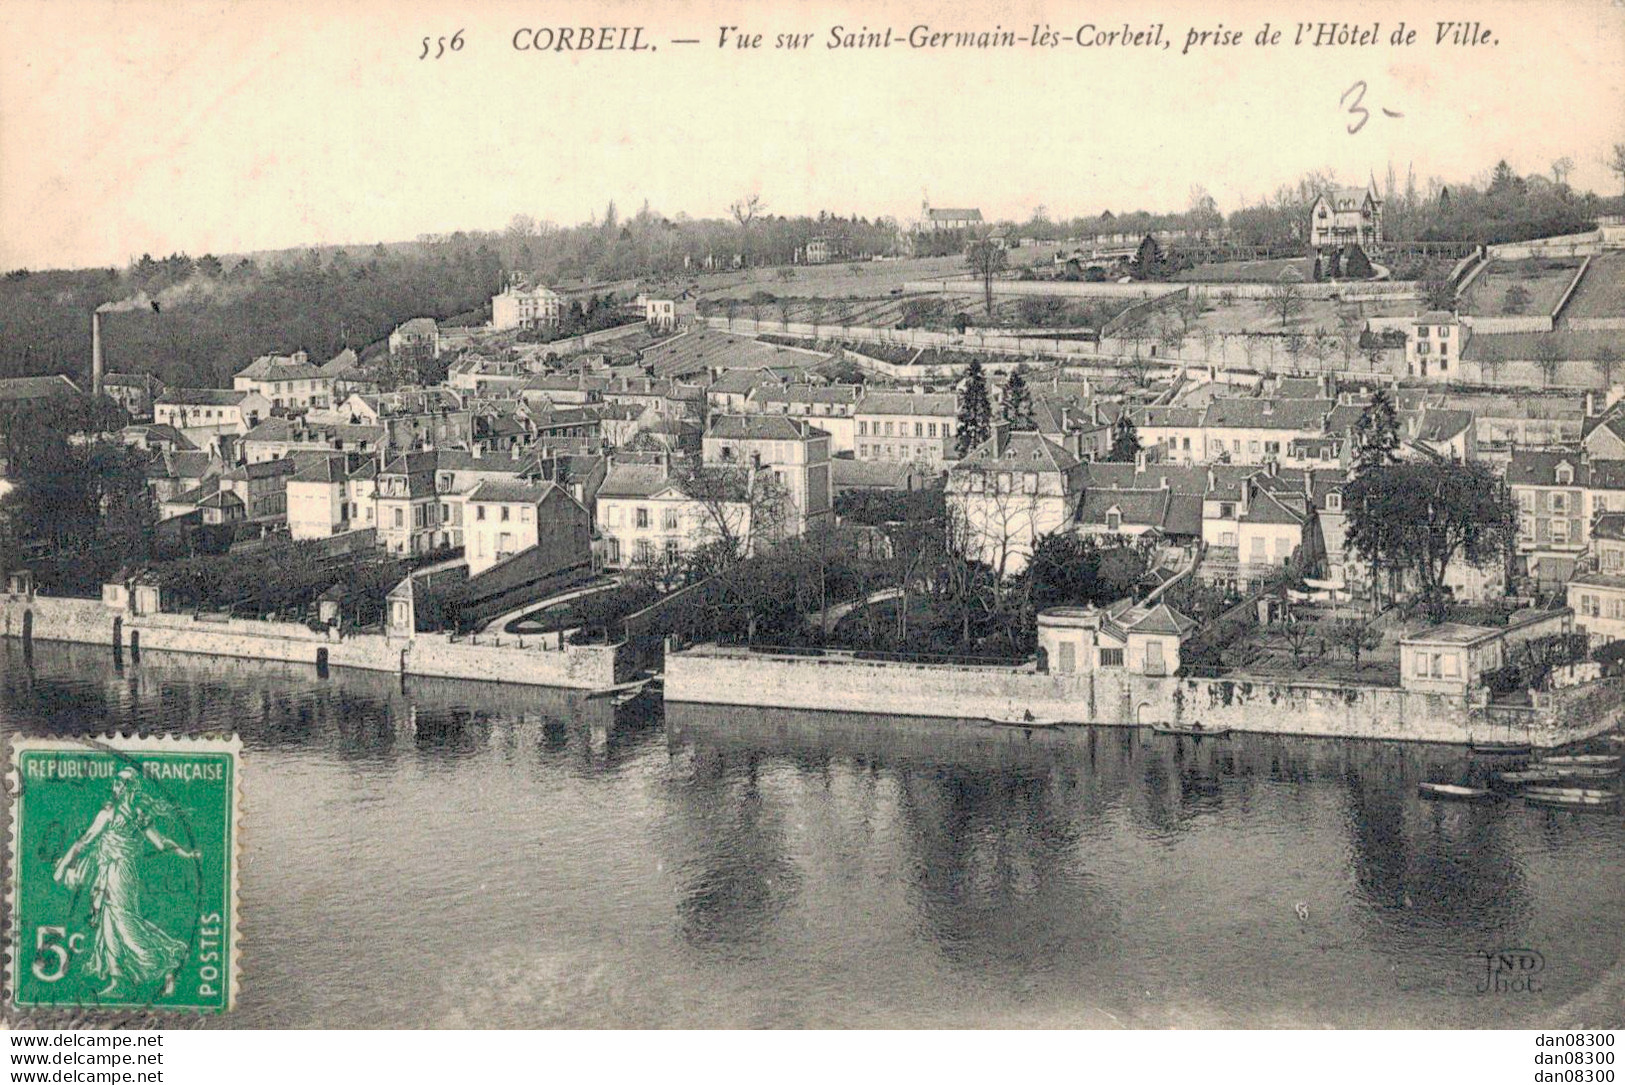 91 CORBEIL VUE SUR SAINT GERMAIN LES CORBEIL PRISE DE L'HOTEL DE VILLE - Corbeil Essonnes